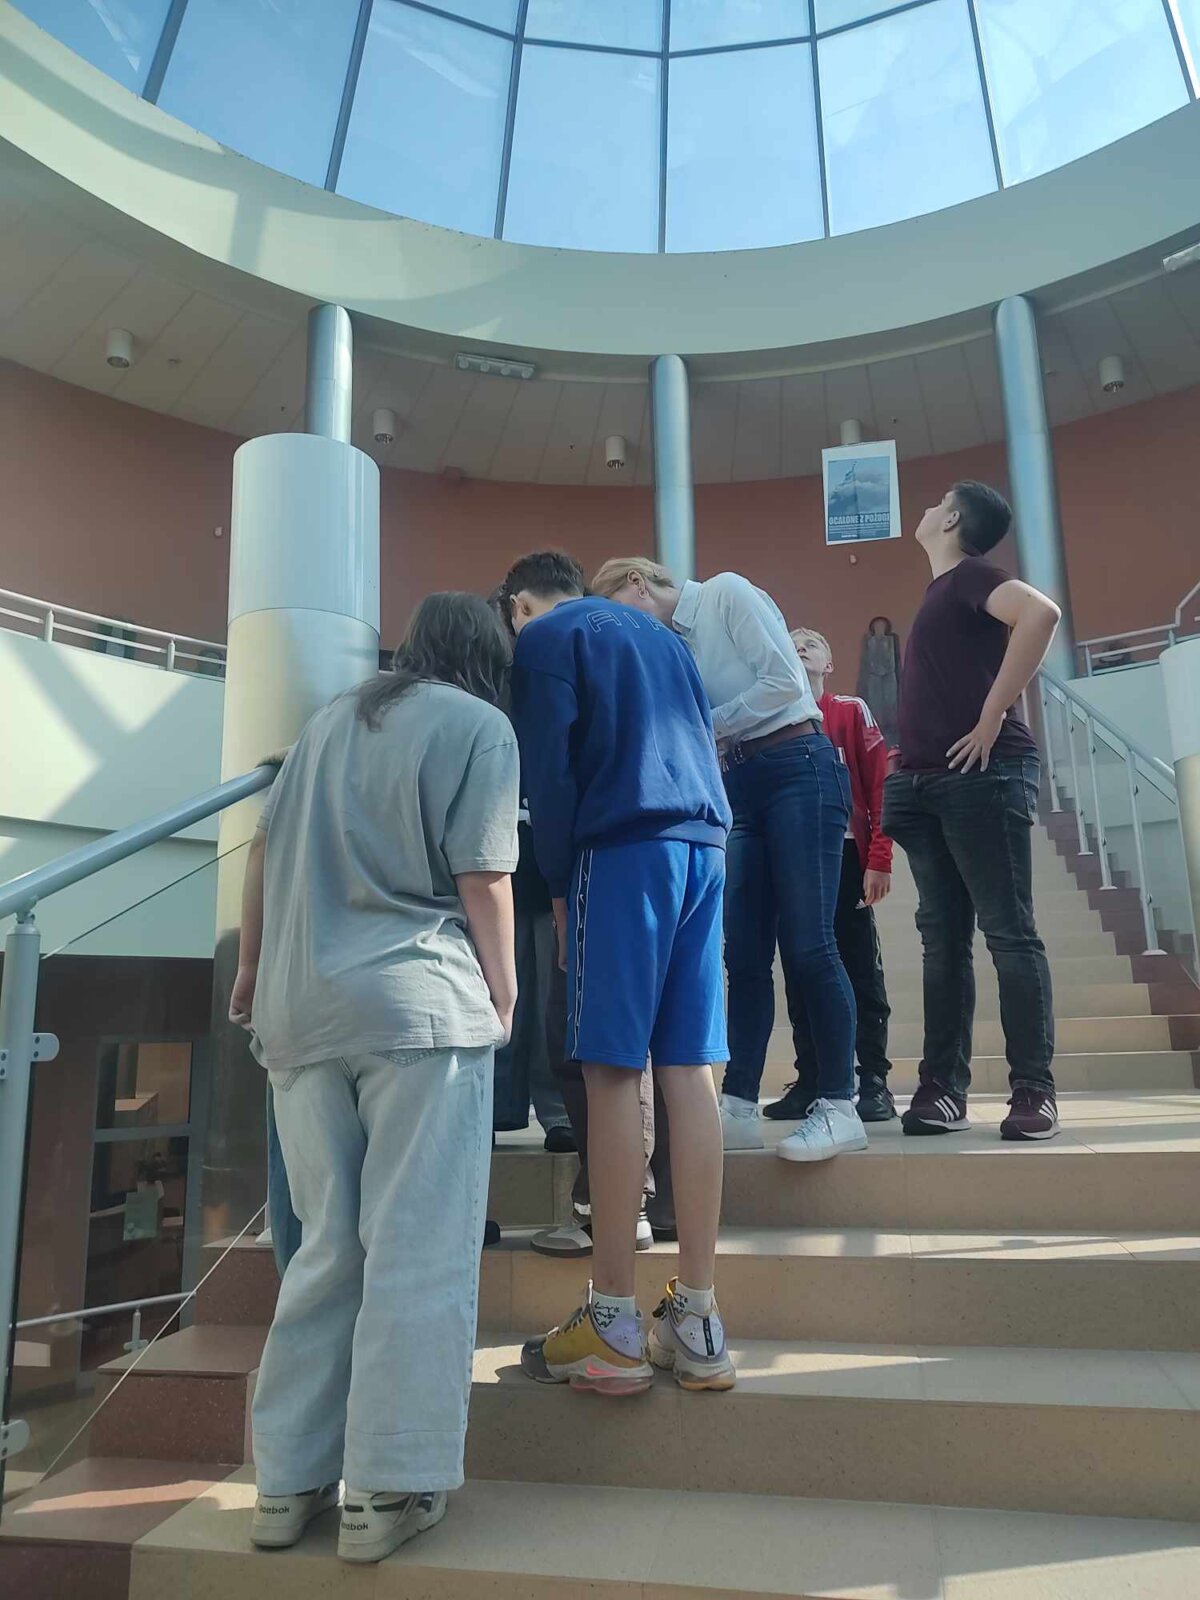 grupa rozwiązuje zadania na schodach